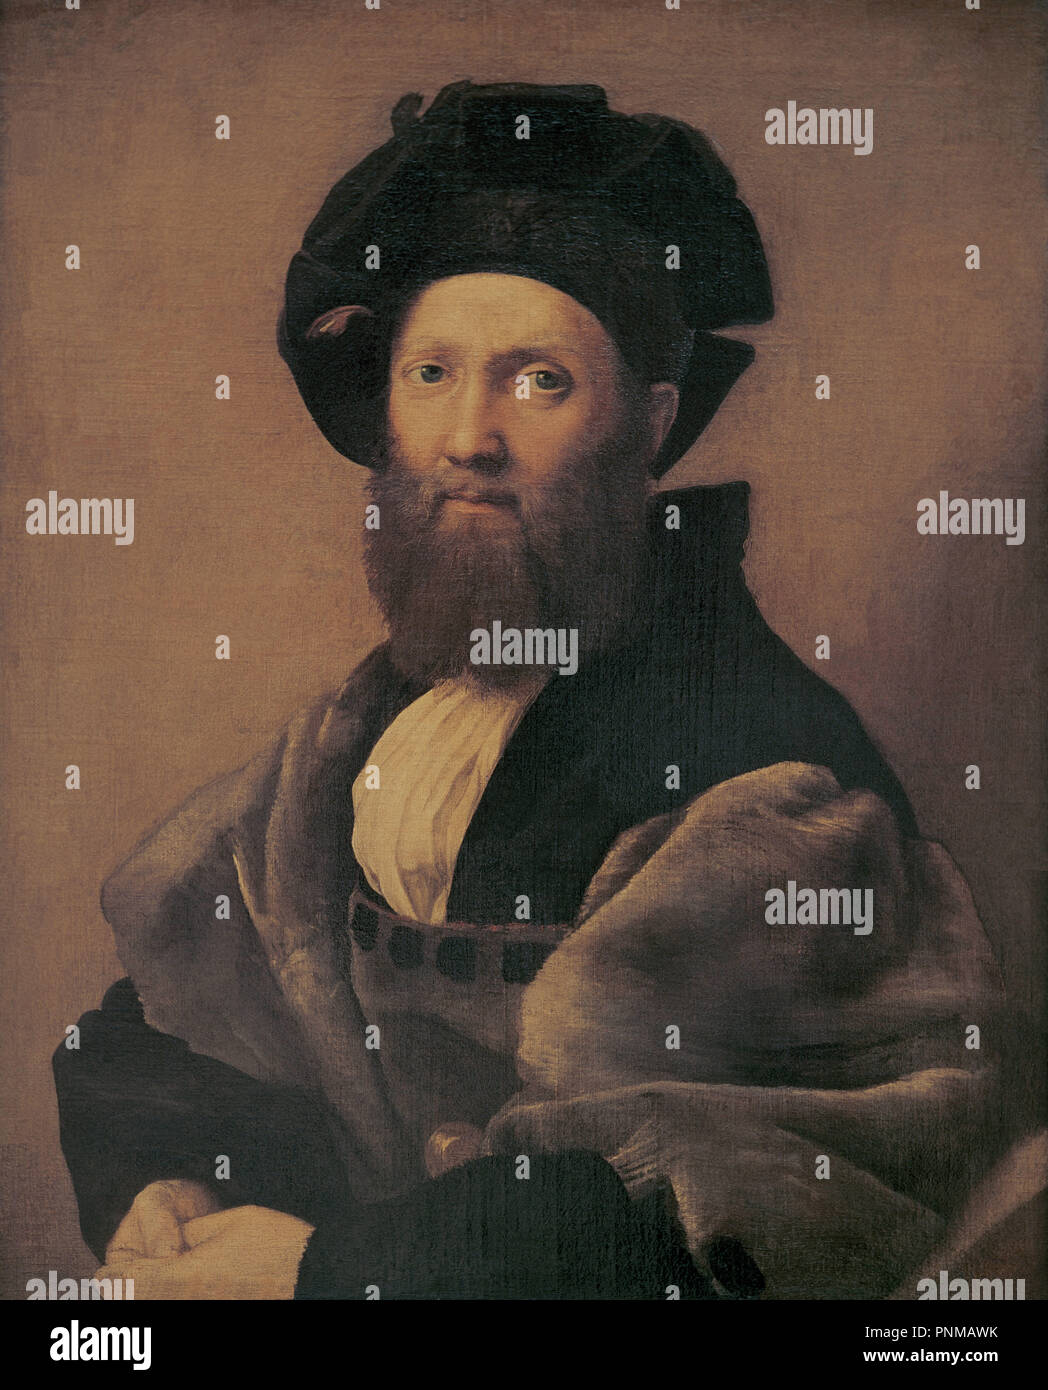 Portrait of Baldassare Castiglione (1478-1529) - 1514/15 - 82x67 cm - oil on canvas - Italian Renaissance. Author: RAPHAEL. Location: LOUVRE MUSEUM-PAINTINGS. France. Stock Photo